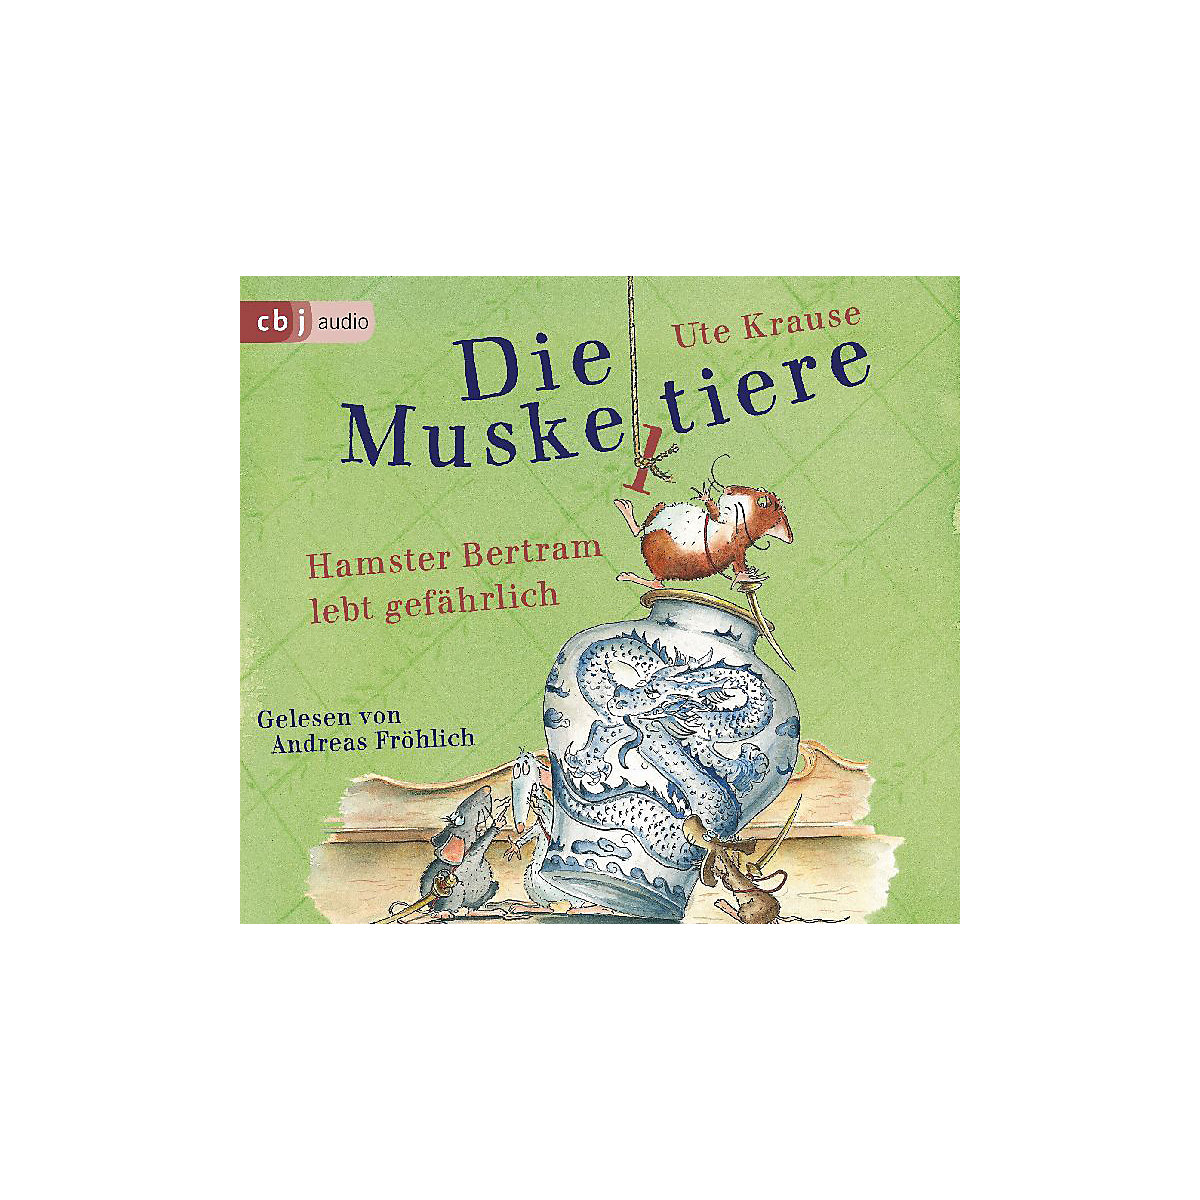 Die Muskeltiere: Hamster Bertram lebt gefährlich 2 Audio-CDs